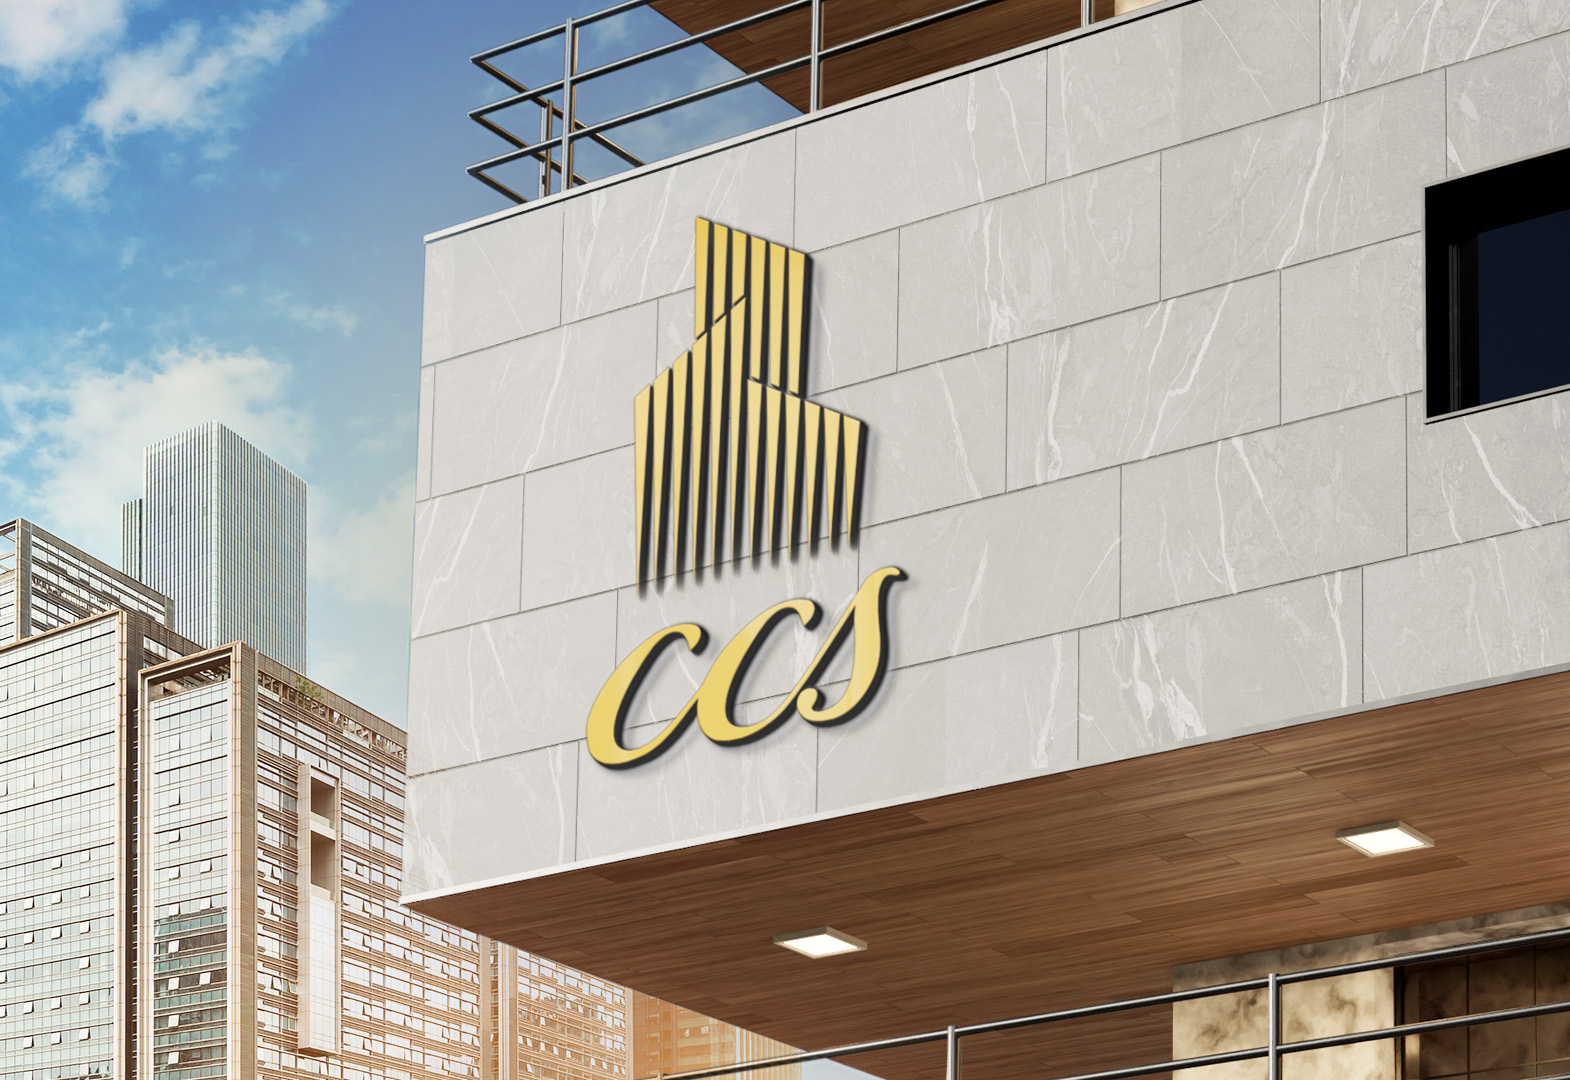 CCS Real Estate